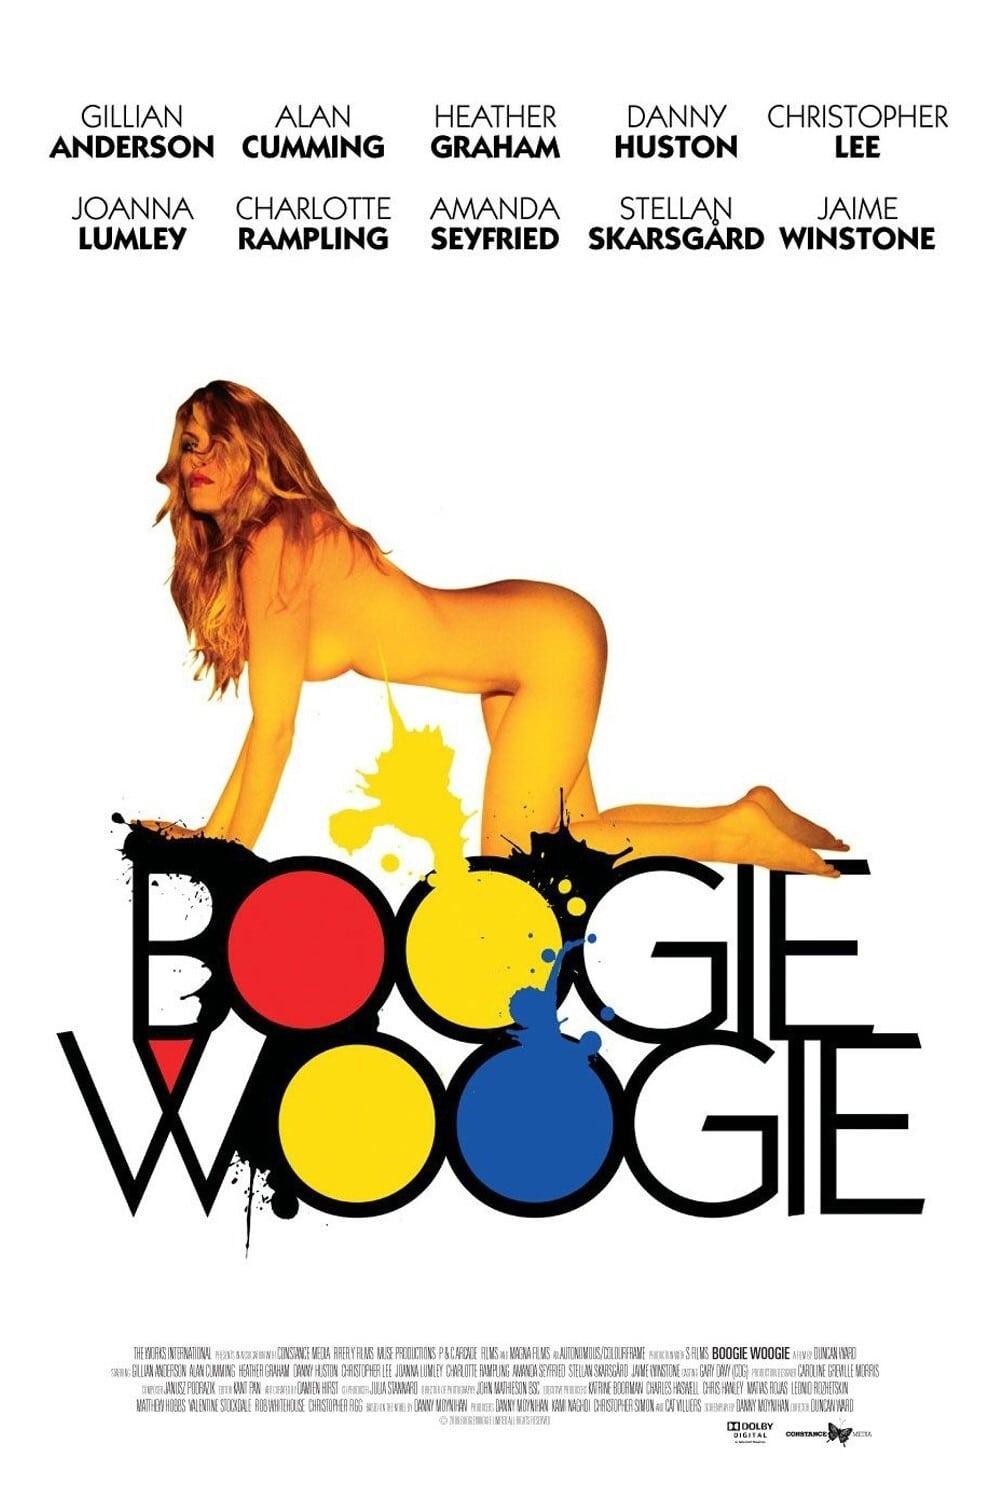 Boogie Woogie poster